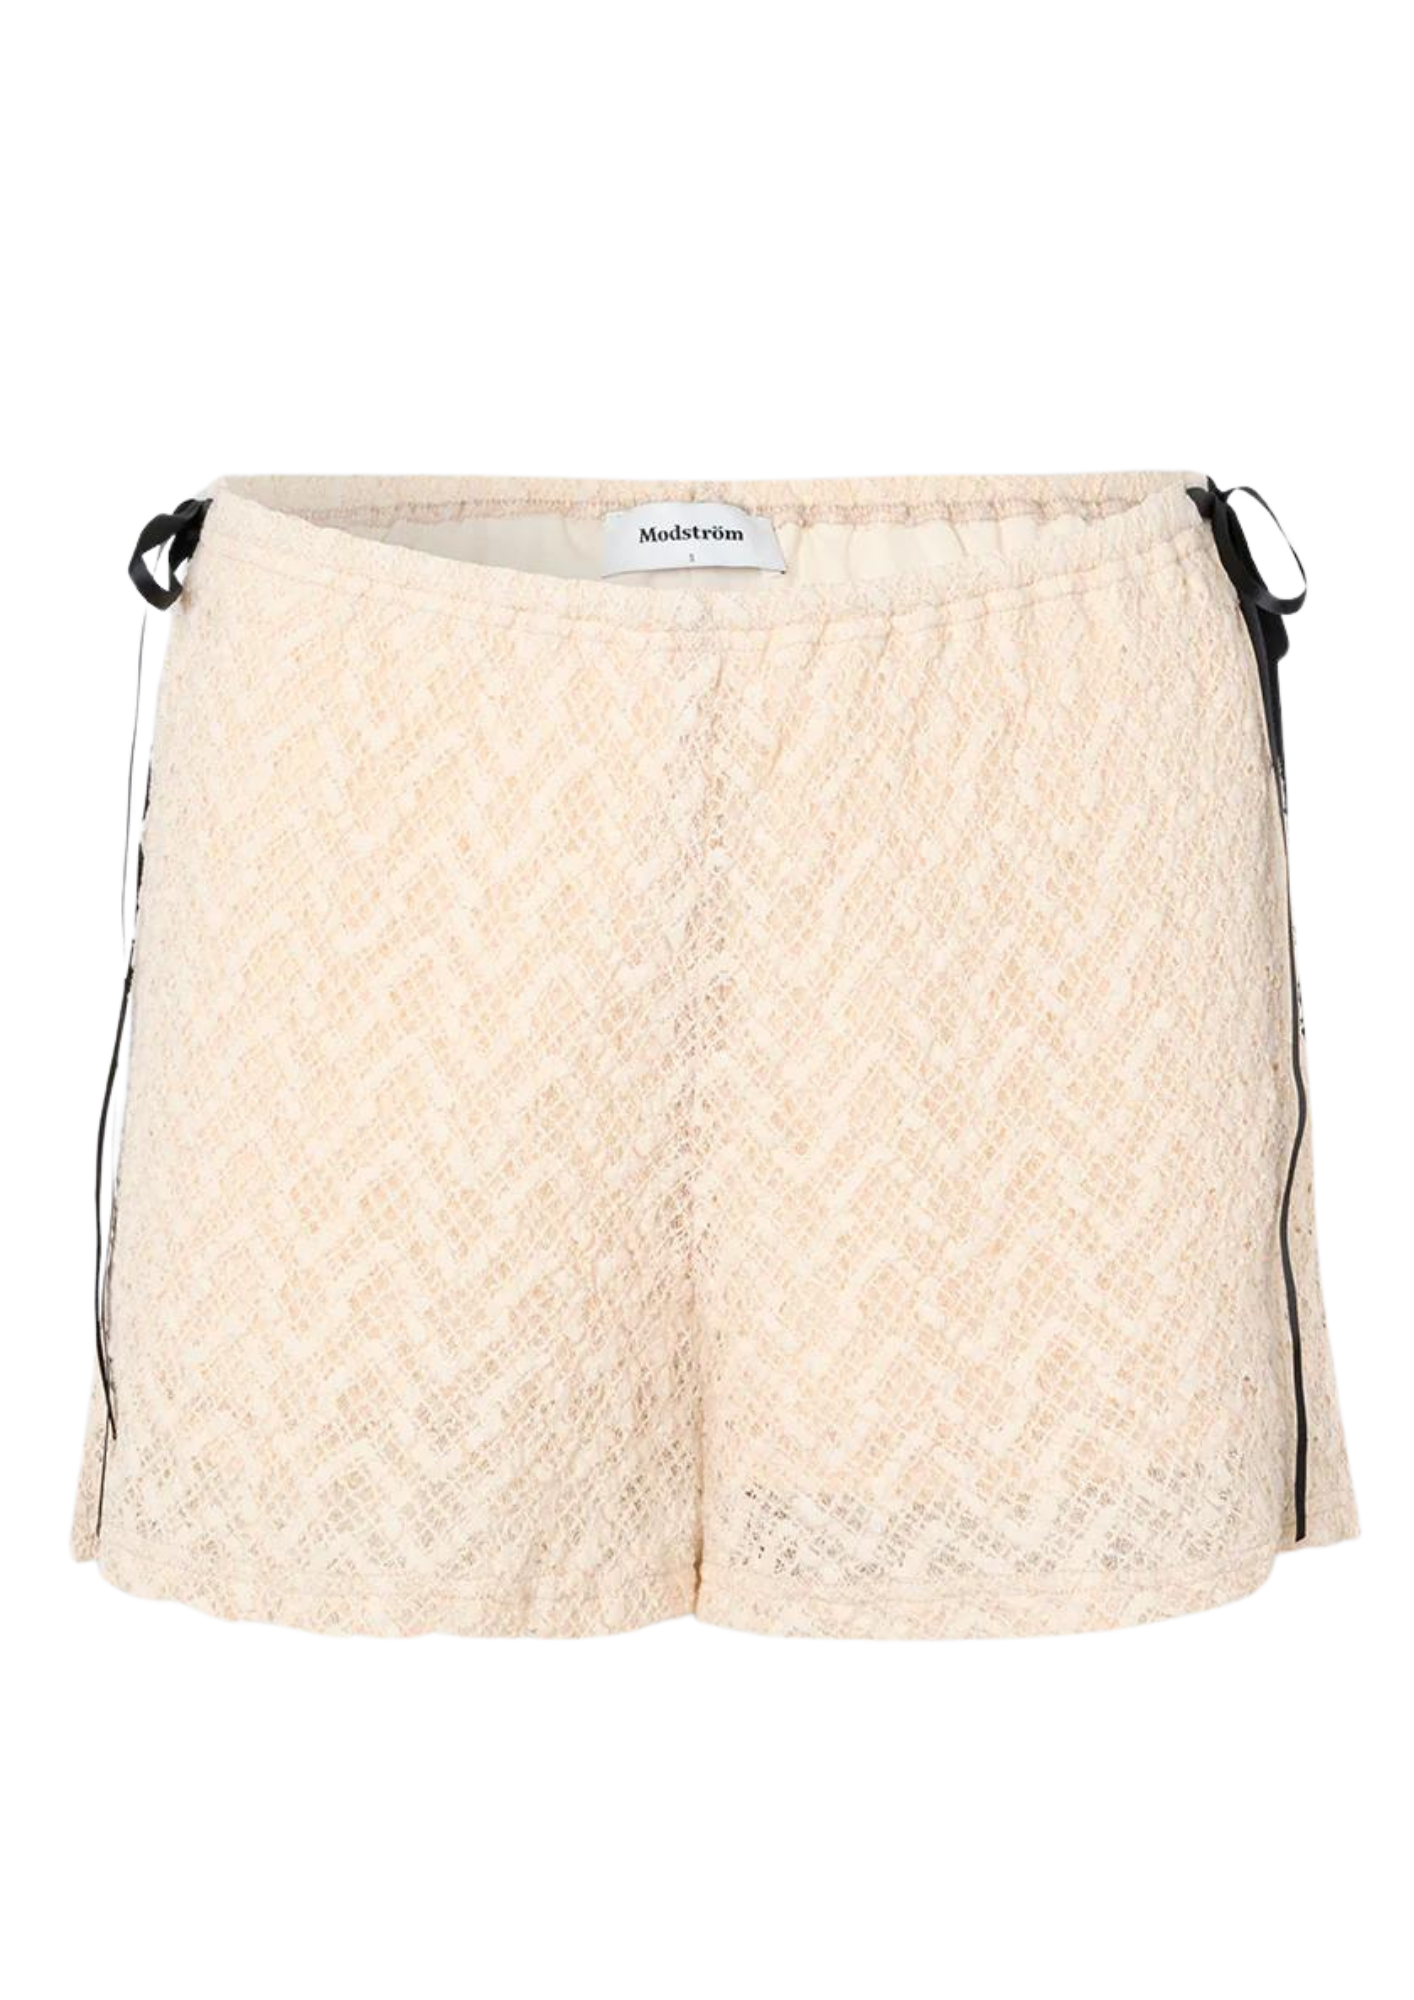 Emilia Lace Shorts - Soft White